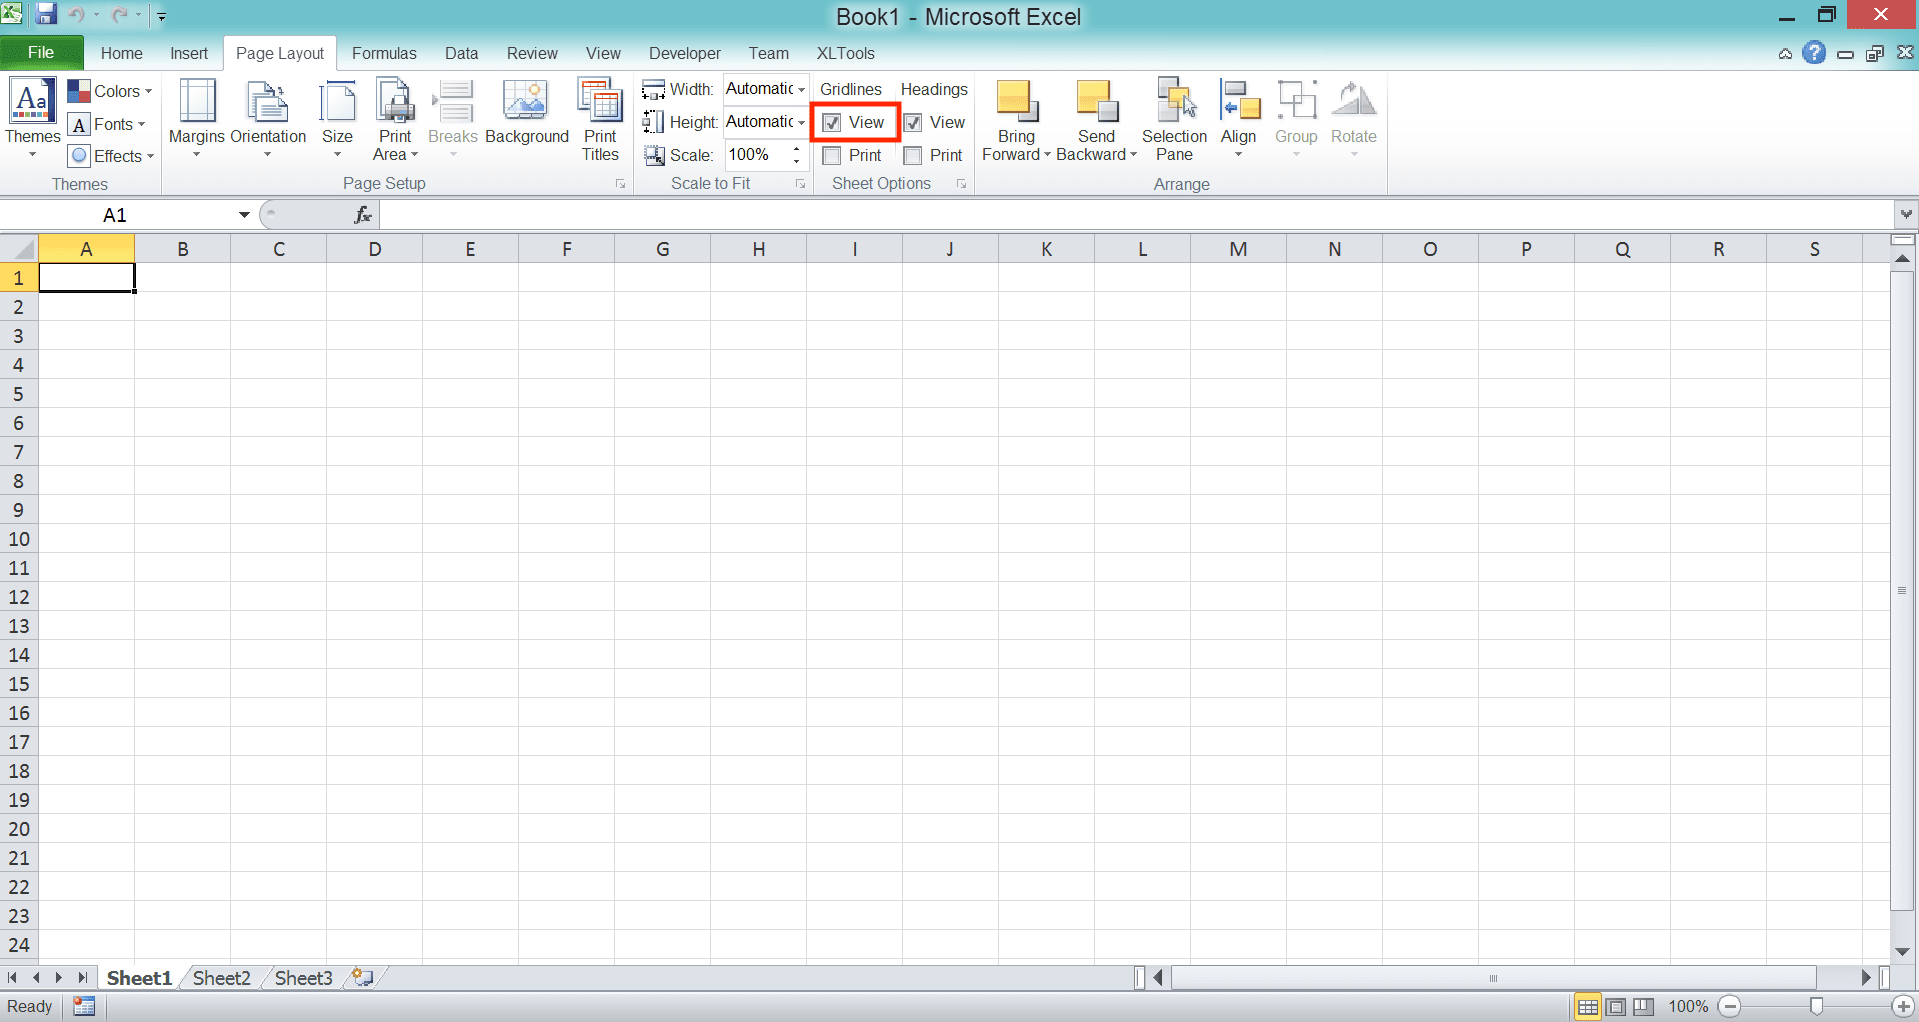 Cara Menghapus/Menghilangkan Garis di Excel - Screenshot Langkah Metode Tab View/Page Layout 2-2